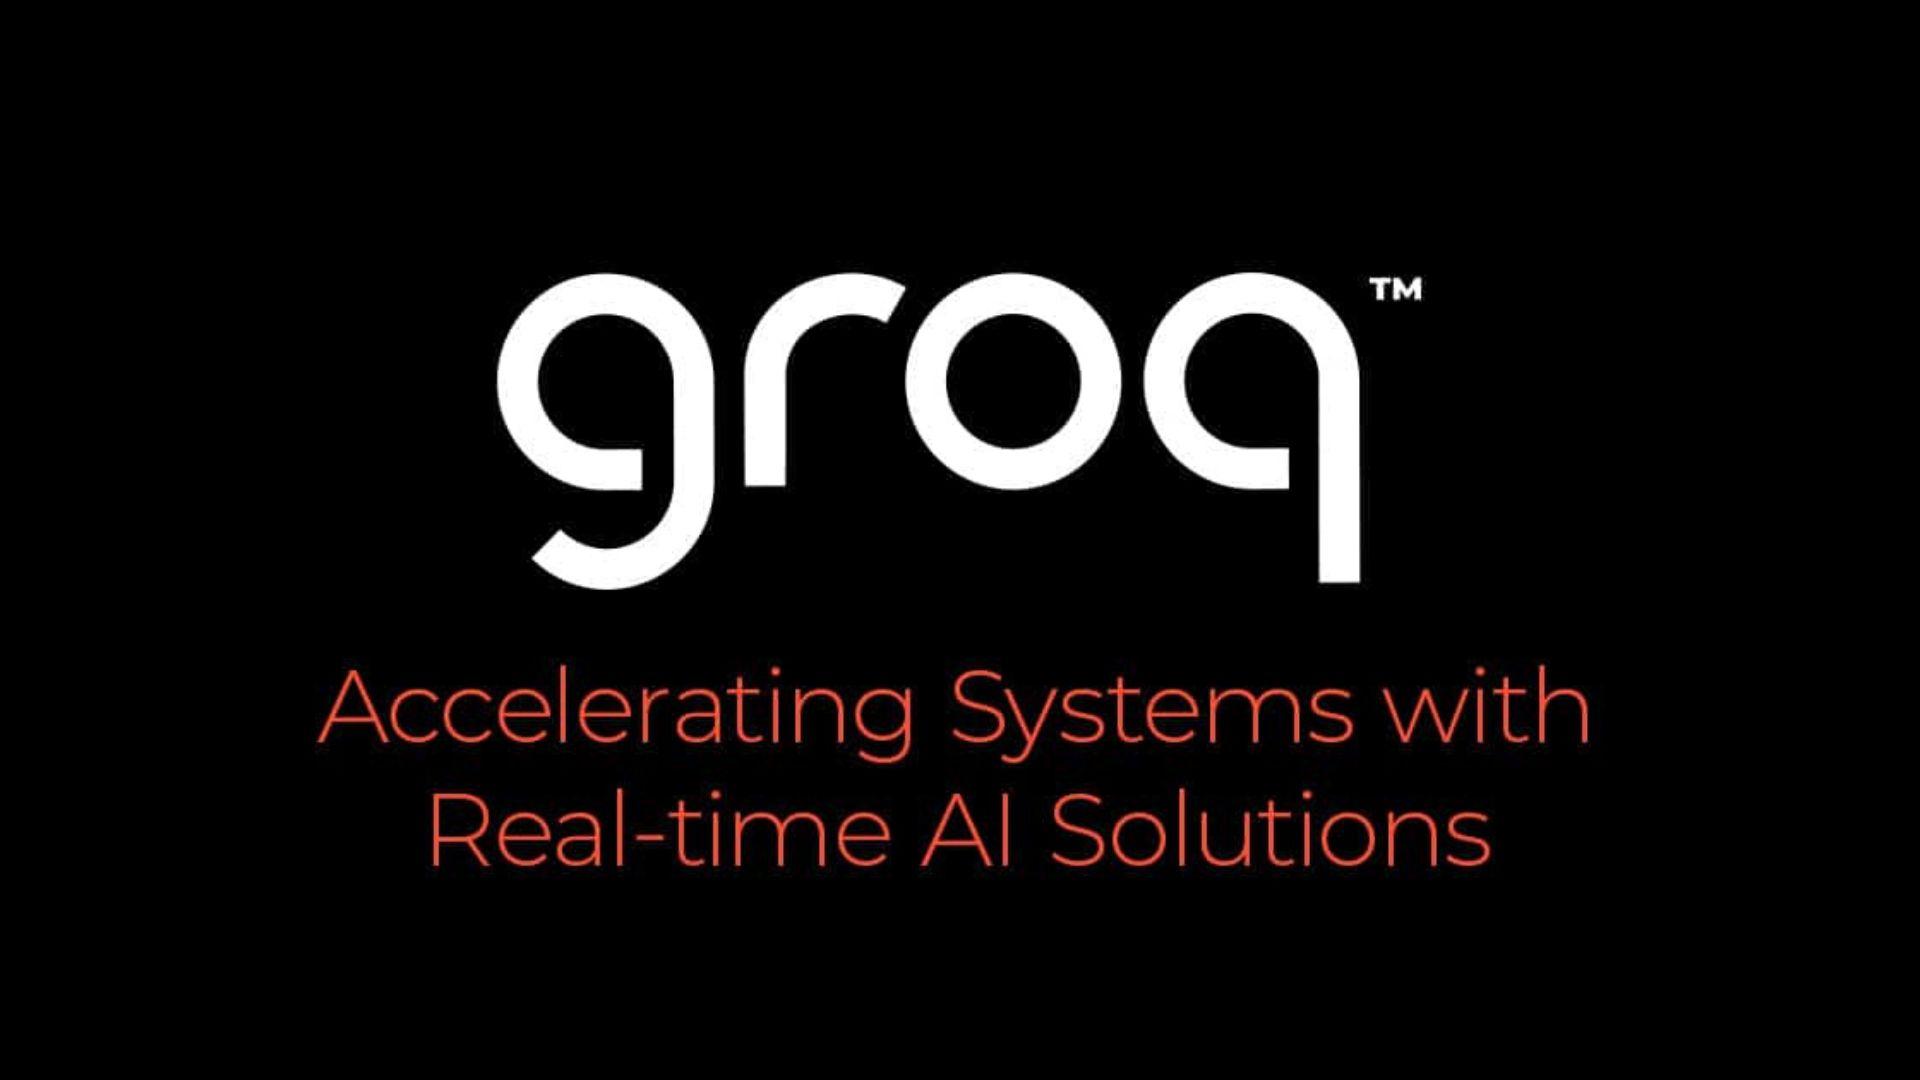 هوش مصنوعی groq : انقلابی در پردازش داده ها